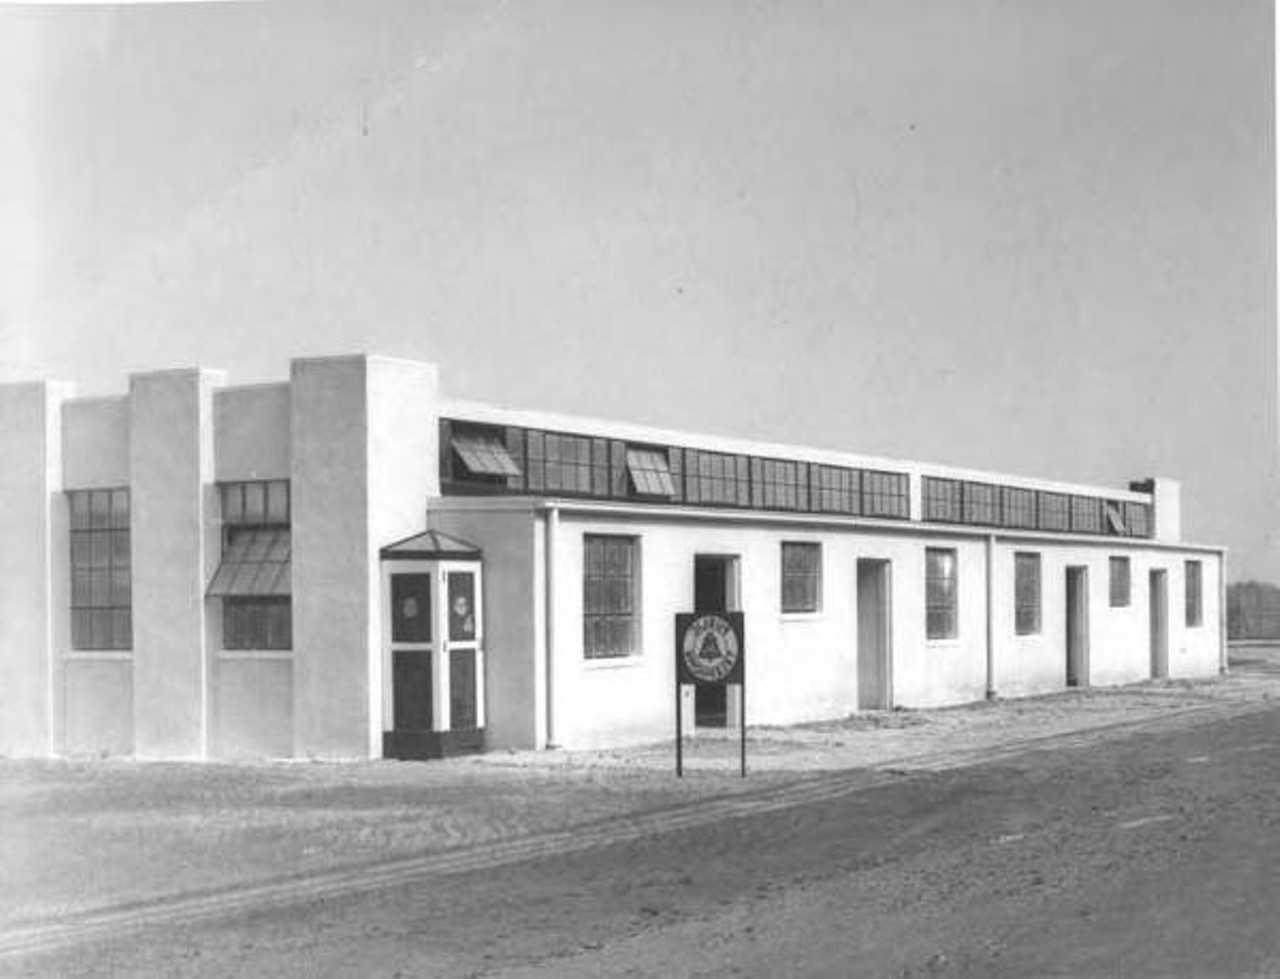  New Restrooms, 1937 